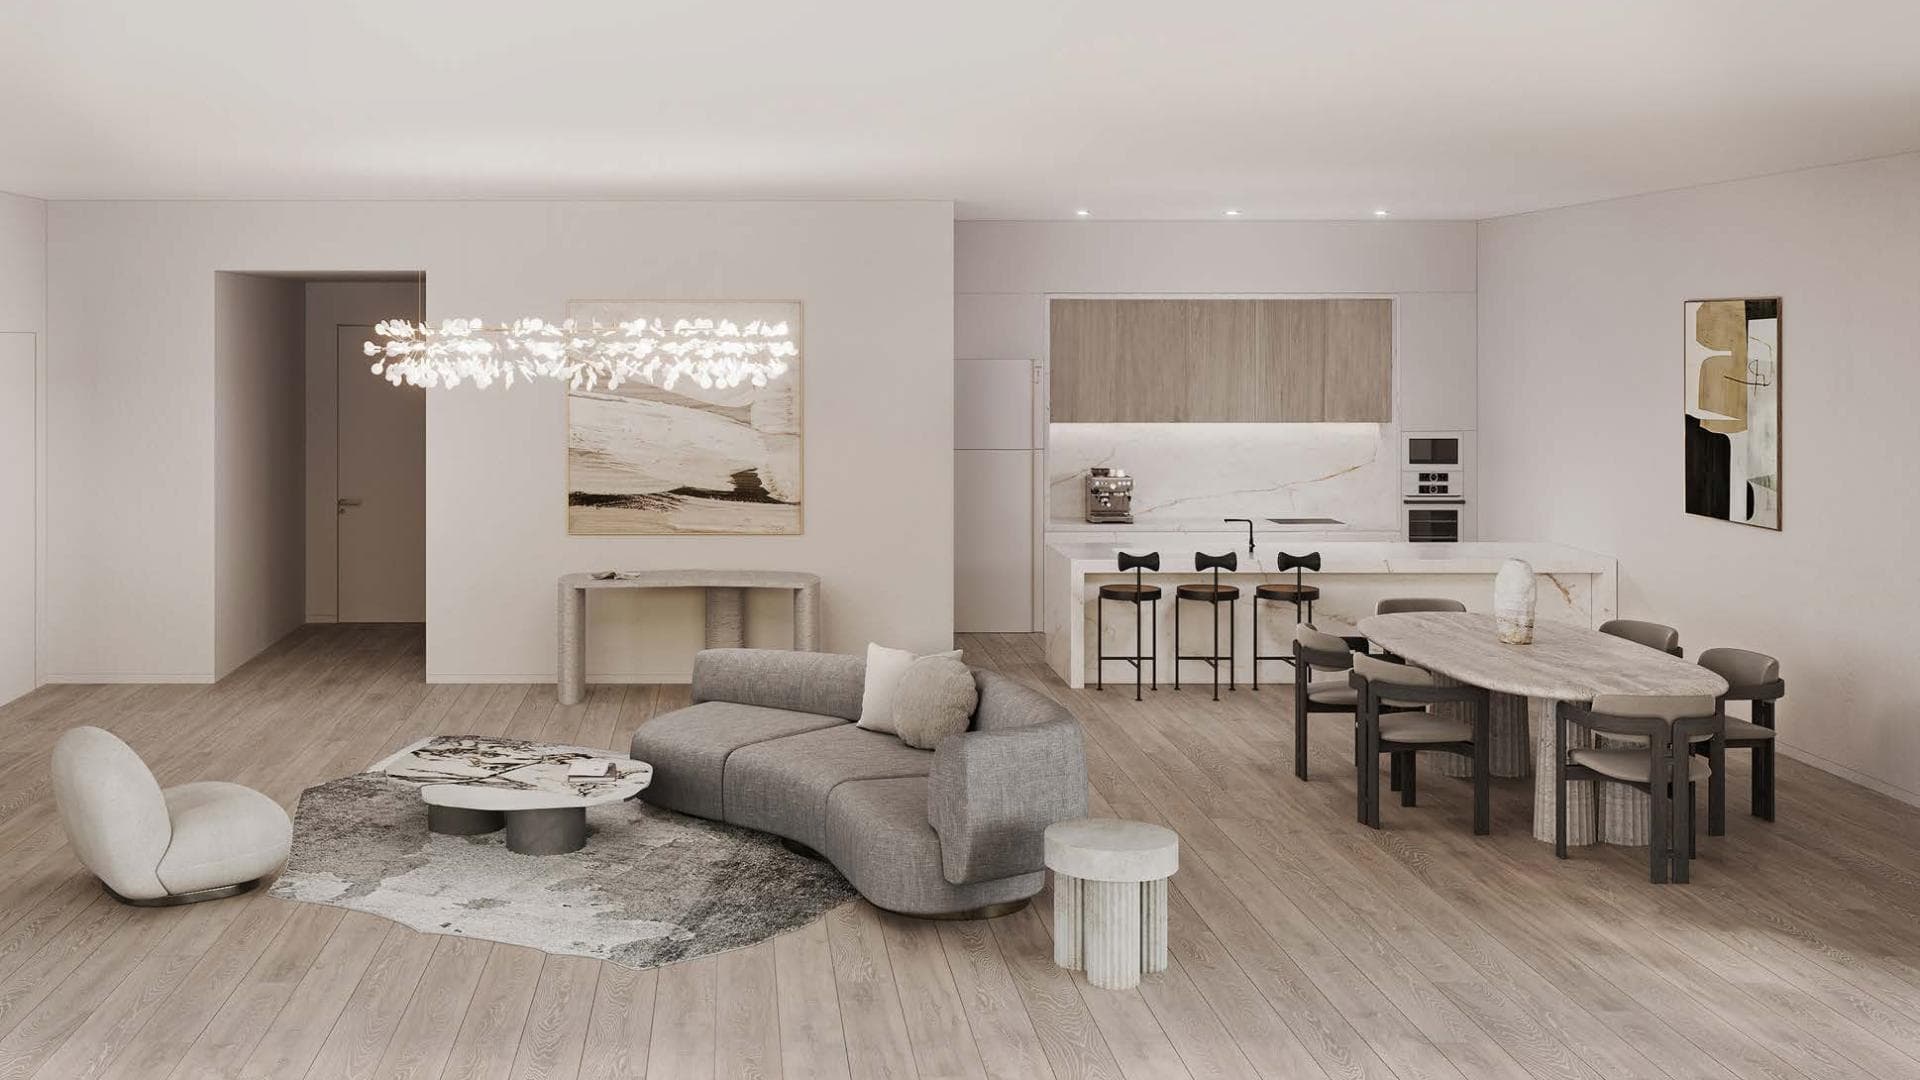 1 Bedroom Apartment For Sale Kempinski Residences The Creek Dubai Lp15626 1e5e4f6d007f0300.jpg